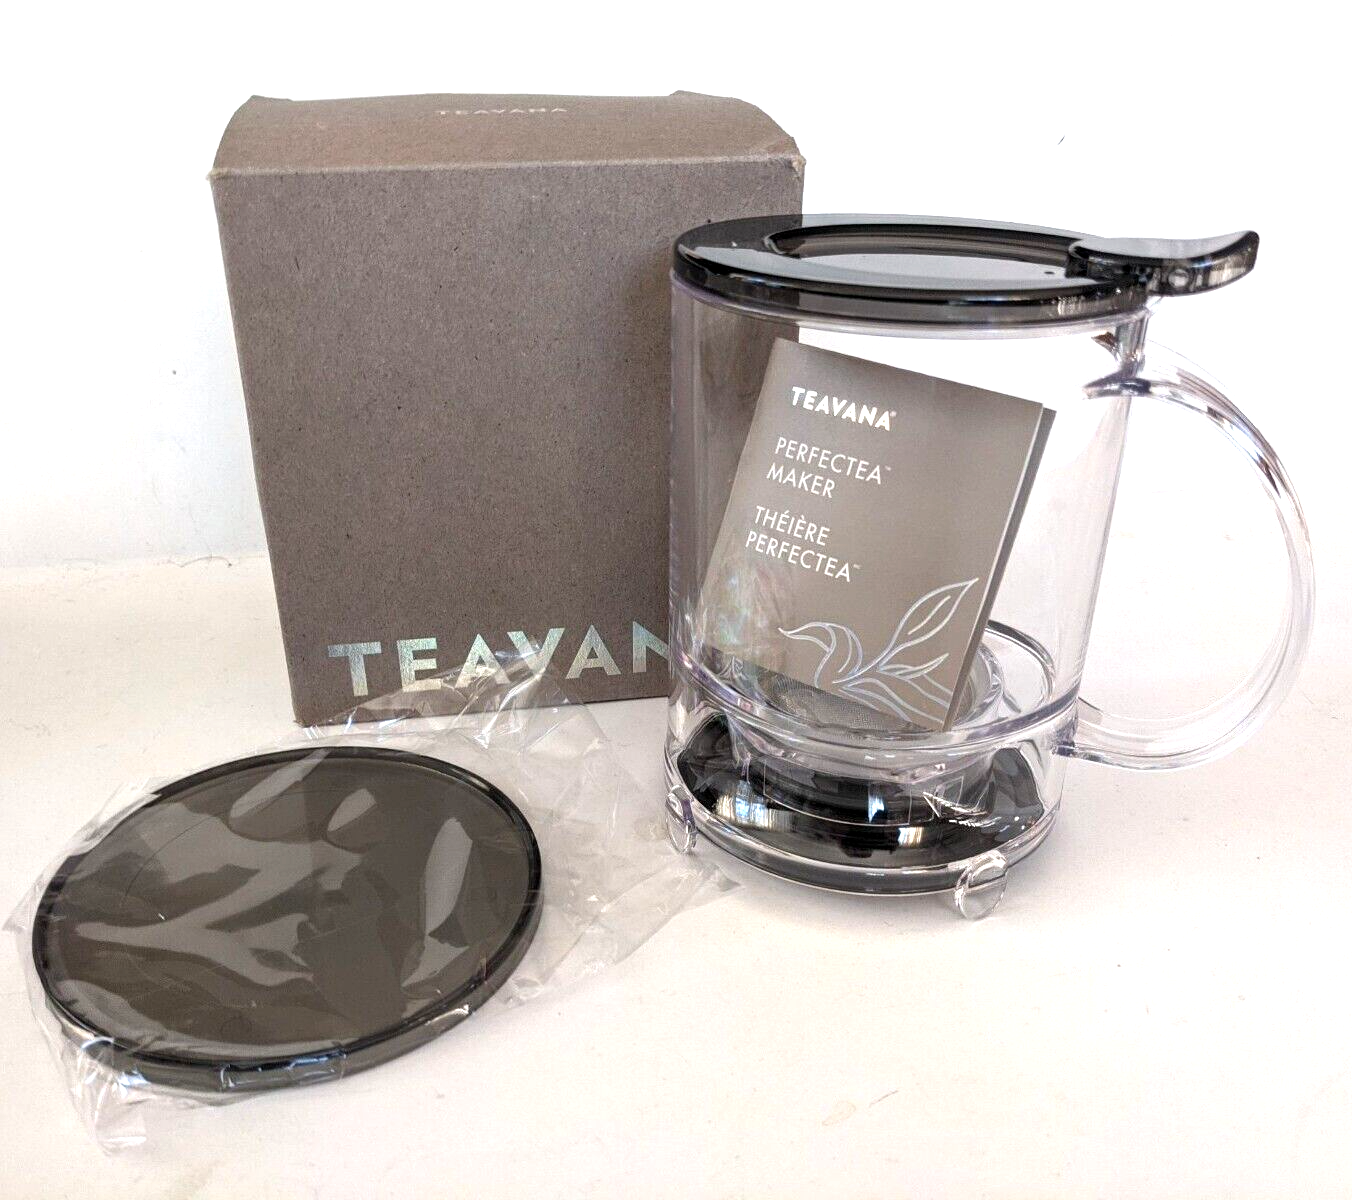 Teavana Perfectea Maker 16 Oz Perfect Loose Leaf Tea Maker Brewer